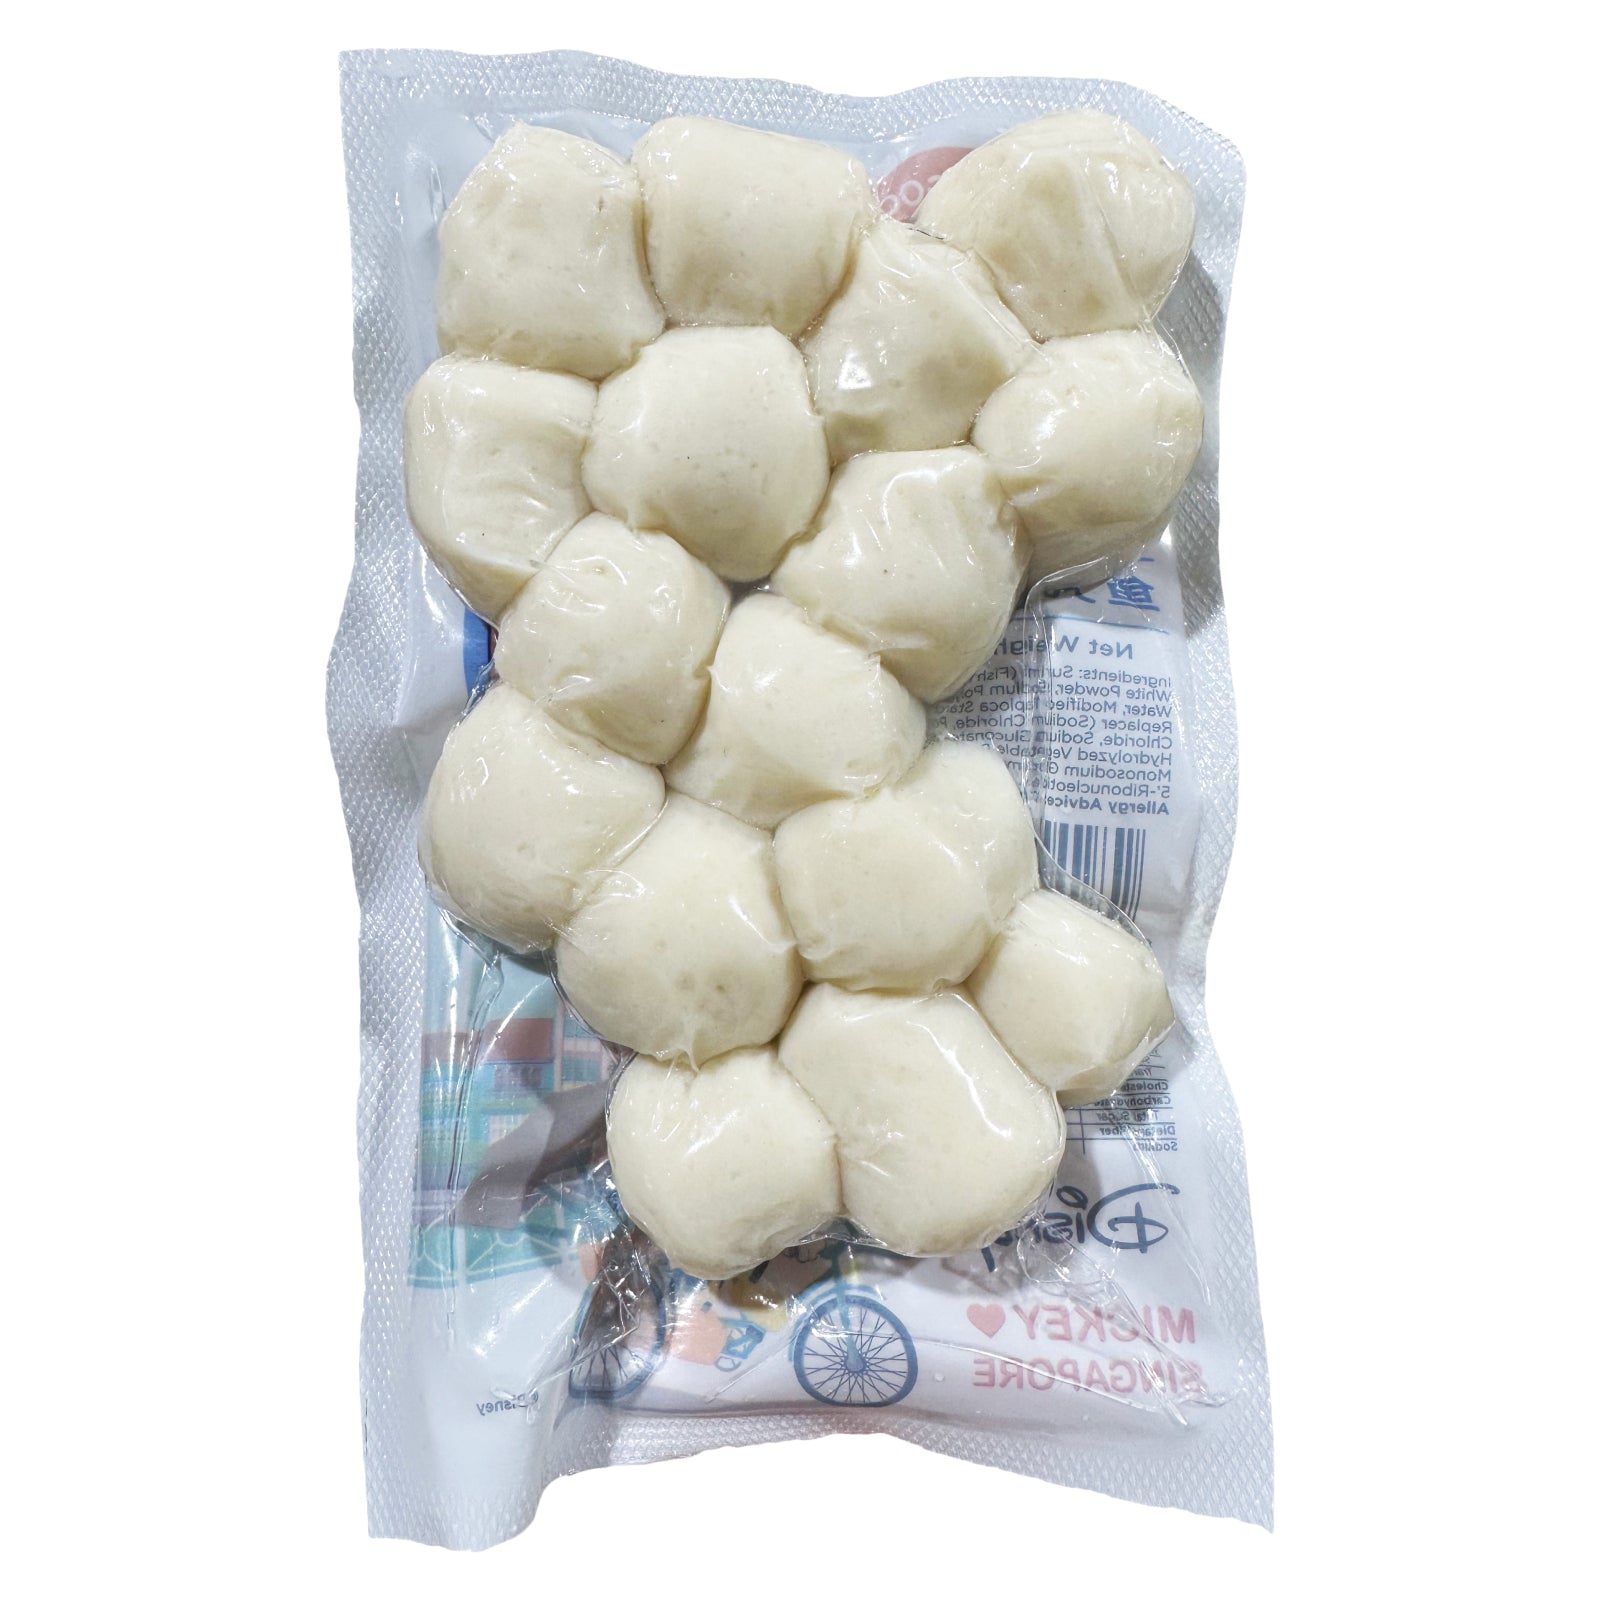 DoDo Low Sodium Fish Ball (S) – DoDo Seafood Treats